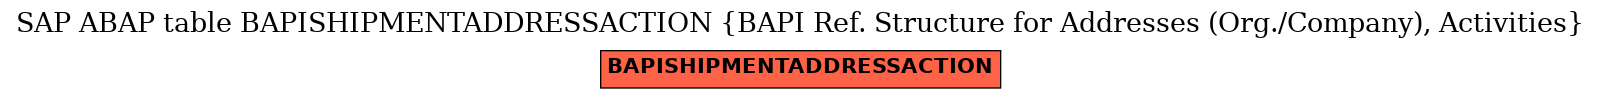 E-R Diagram for table BAPISHIPMENTADDRESSACTION (BAPI Ref. Structure for Addresses (Org./Company), Activities)